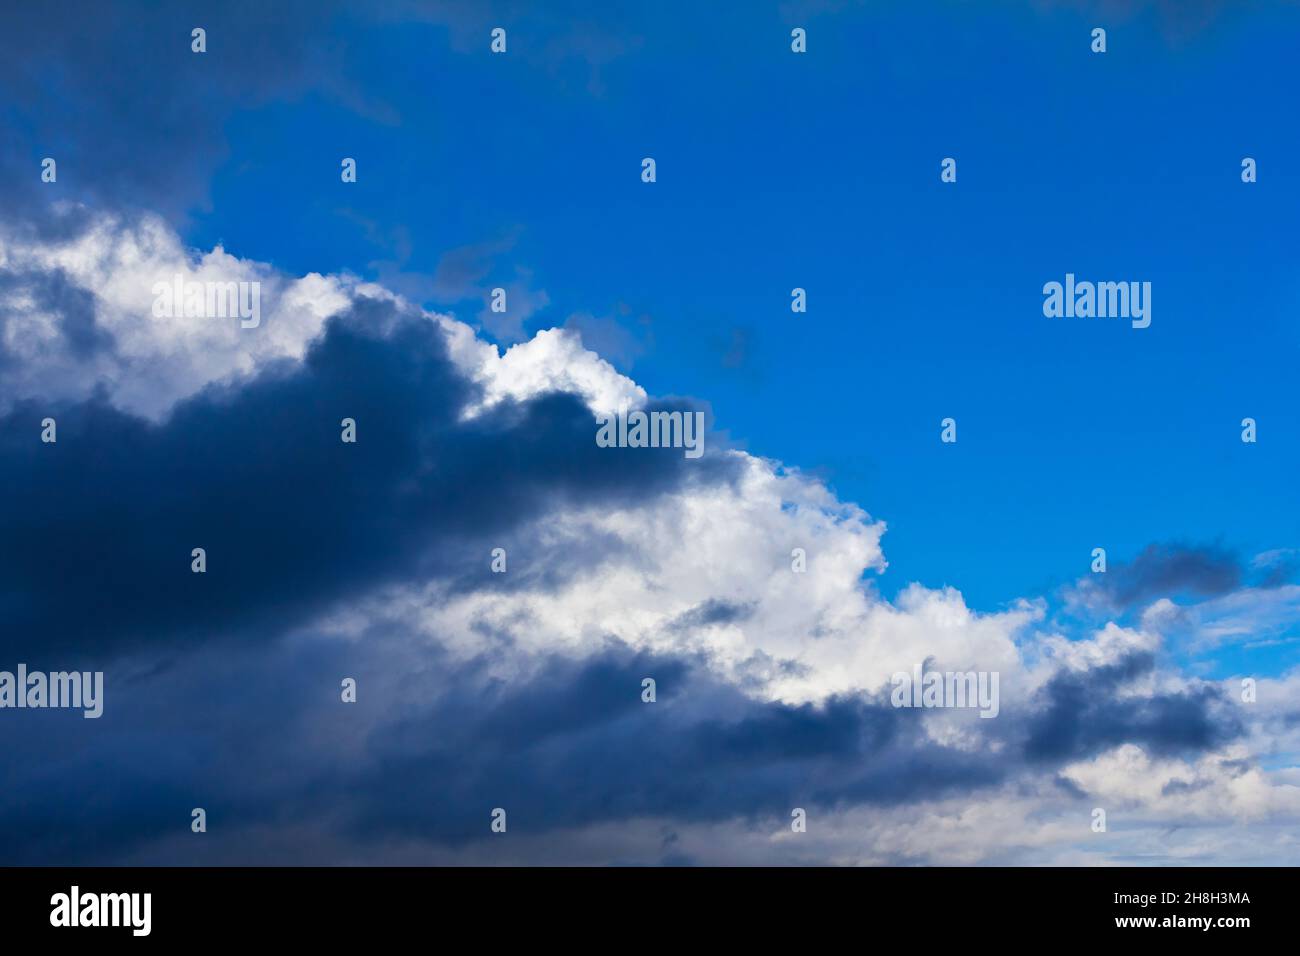 Luz dramática y nubes oscuras contra un cielo azul de verano. Textura de fondo de concepto de atmósfera peligrosa. Foto de stock